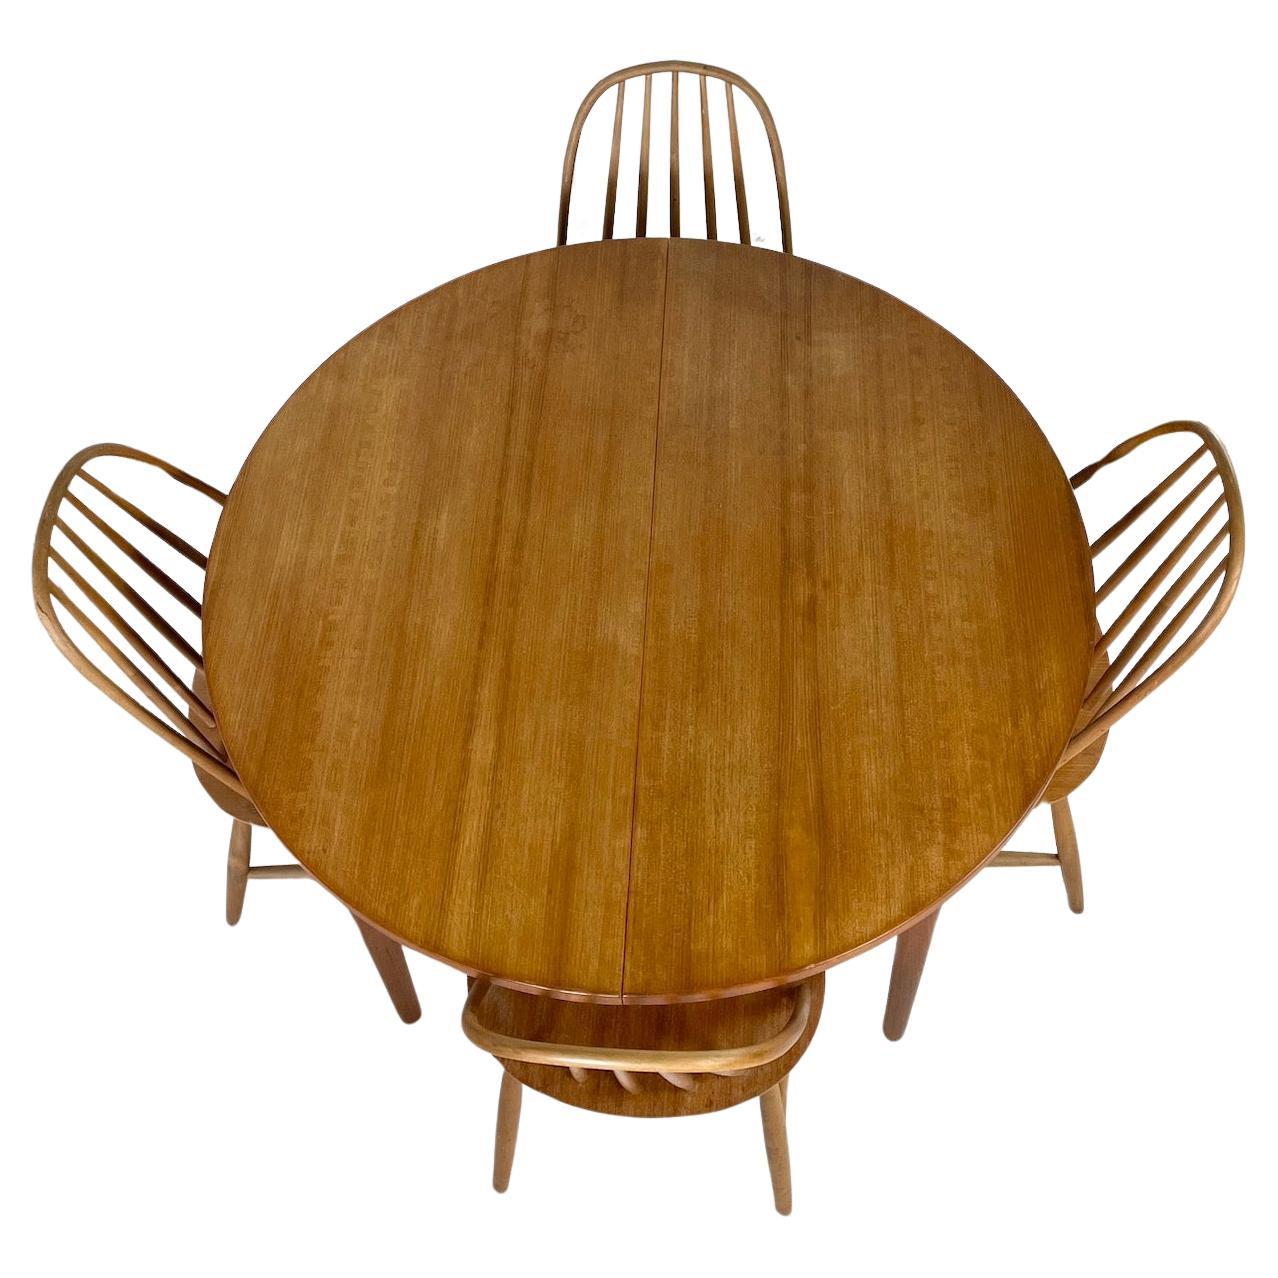 Runder Esstisch aus schwedischem Teakholz, erweiterbar zu einem Oval mit 2 integrierten, klappbaren Blättern
Hergestellt in Schweden
Label an der Unterseite des Tisches
TROEDS Malta Nils Jonsson
Circa 1950er Jahre
Tisch kreisförmig: Höhe 73cm